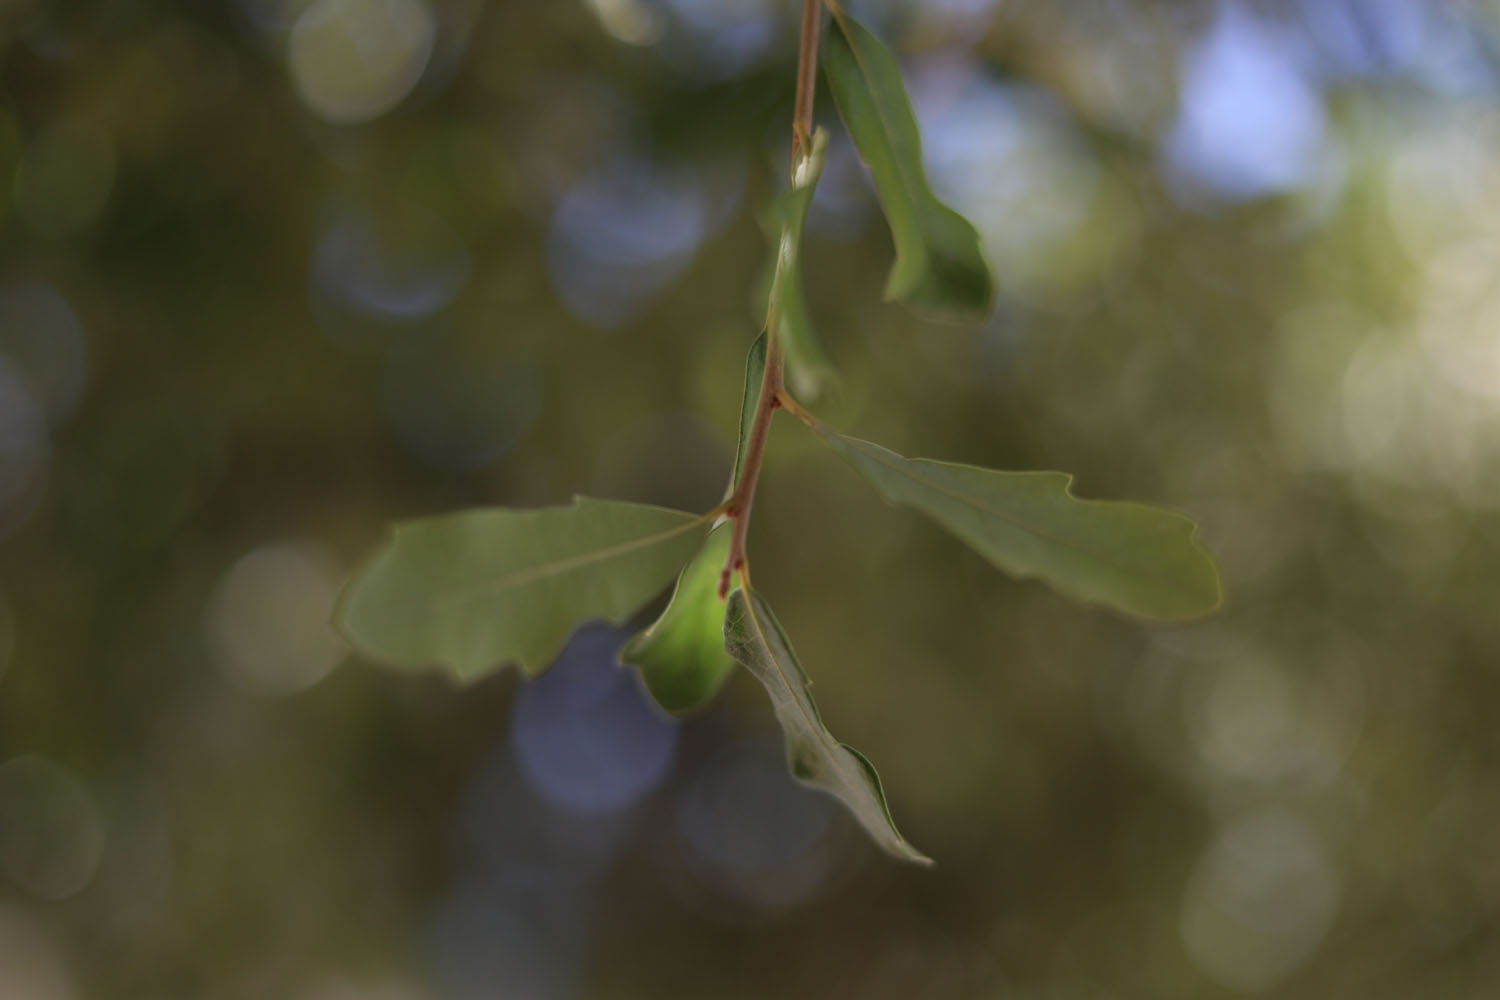 A leaf on a tree